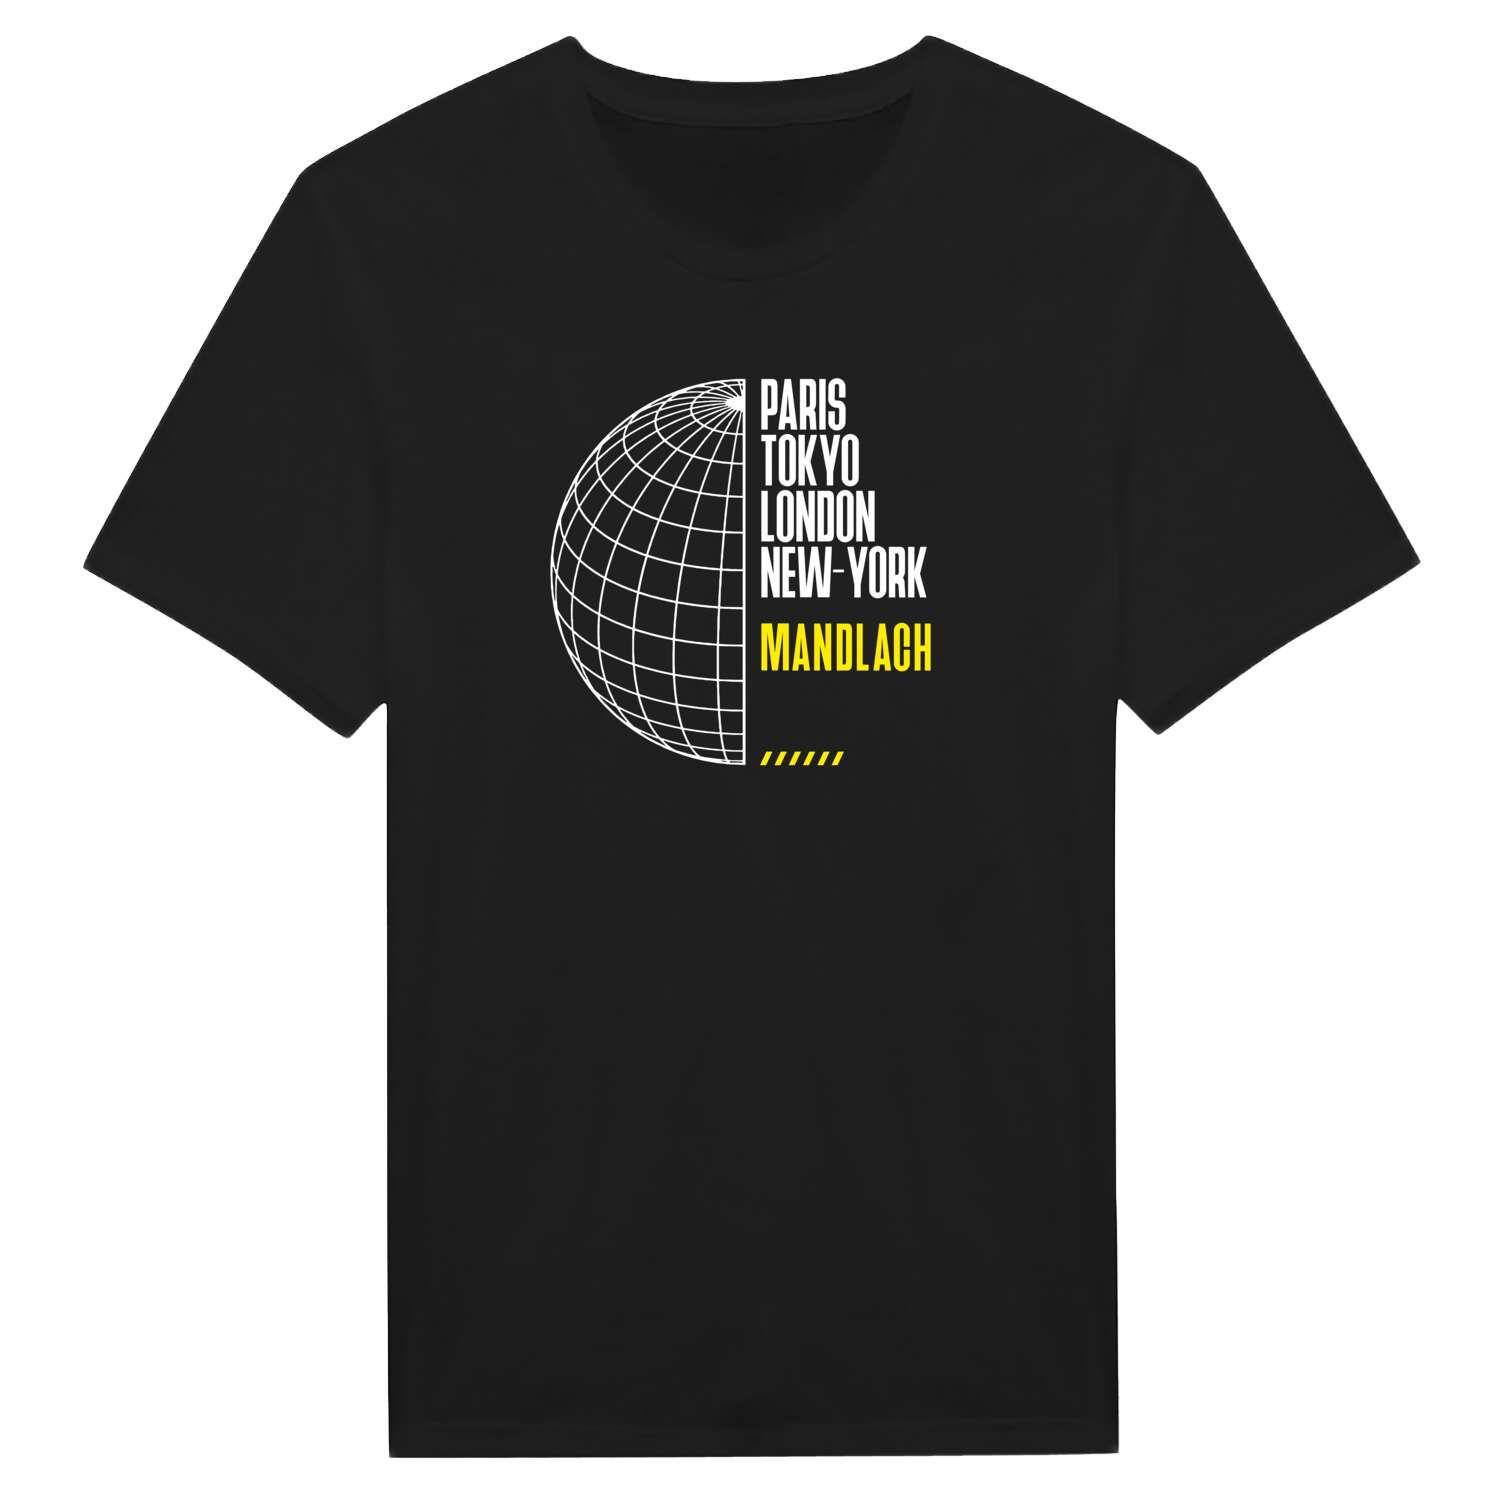 Mandlach T-Shirt »Paris Tokyo London«